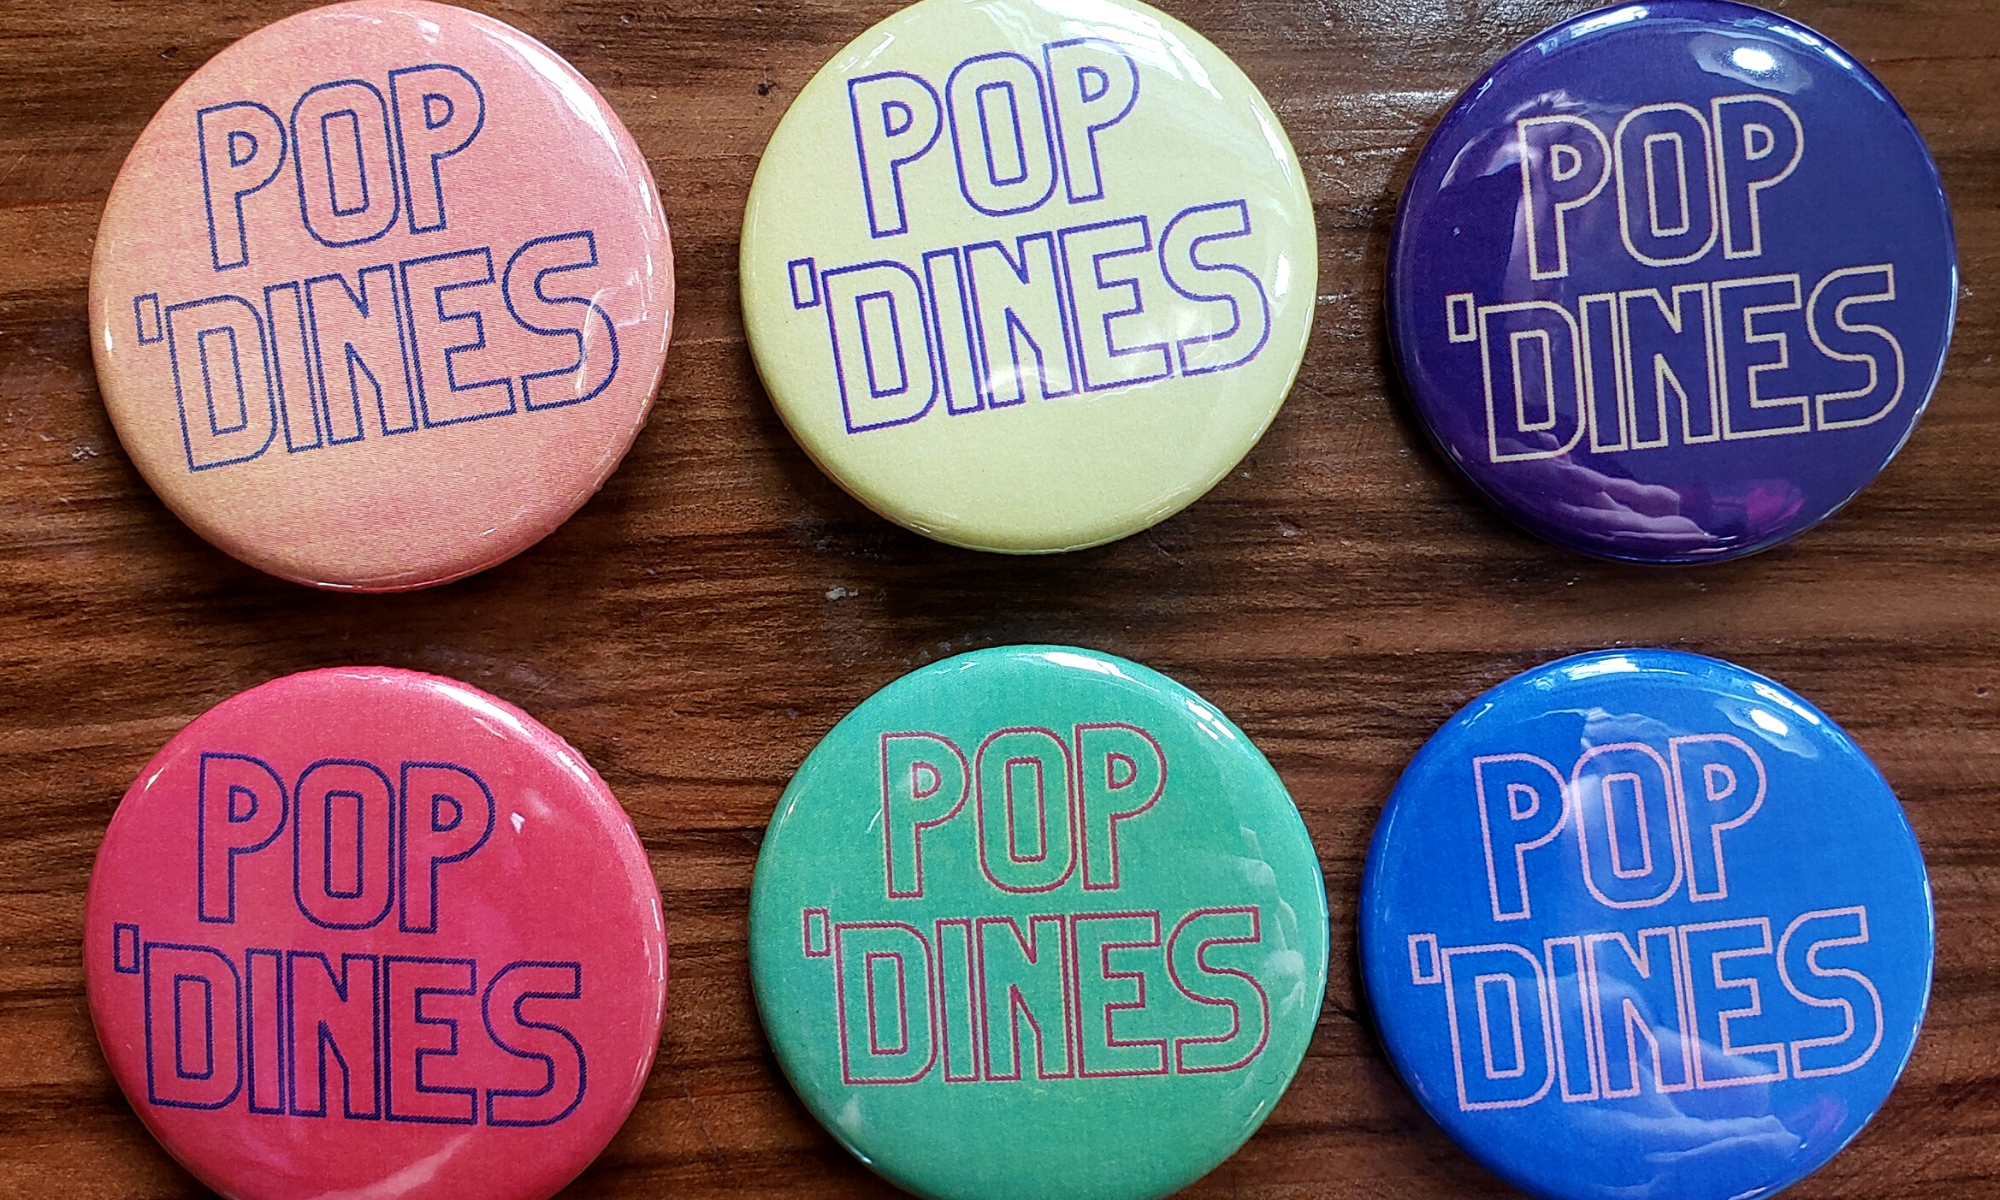 Header image of pop 'dines button set